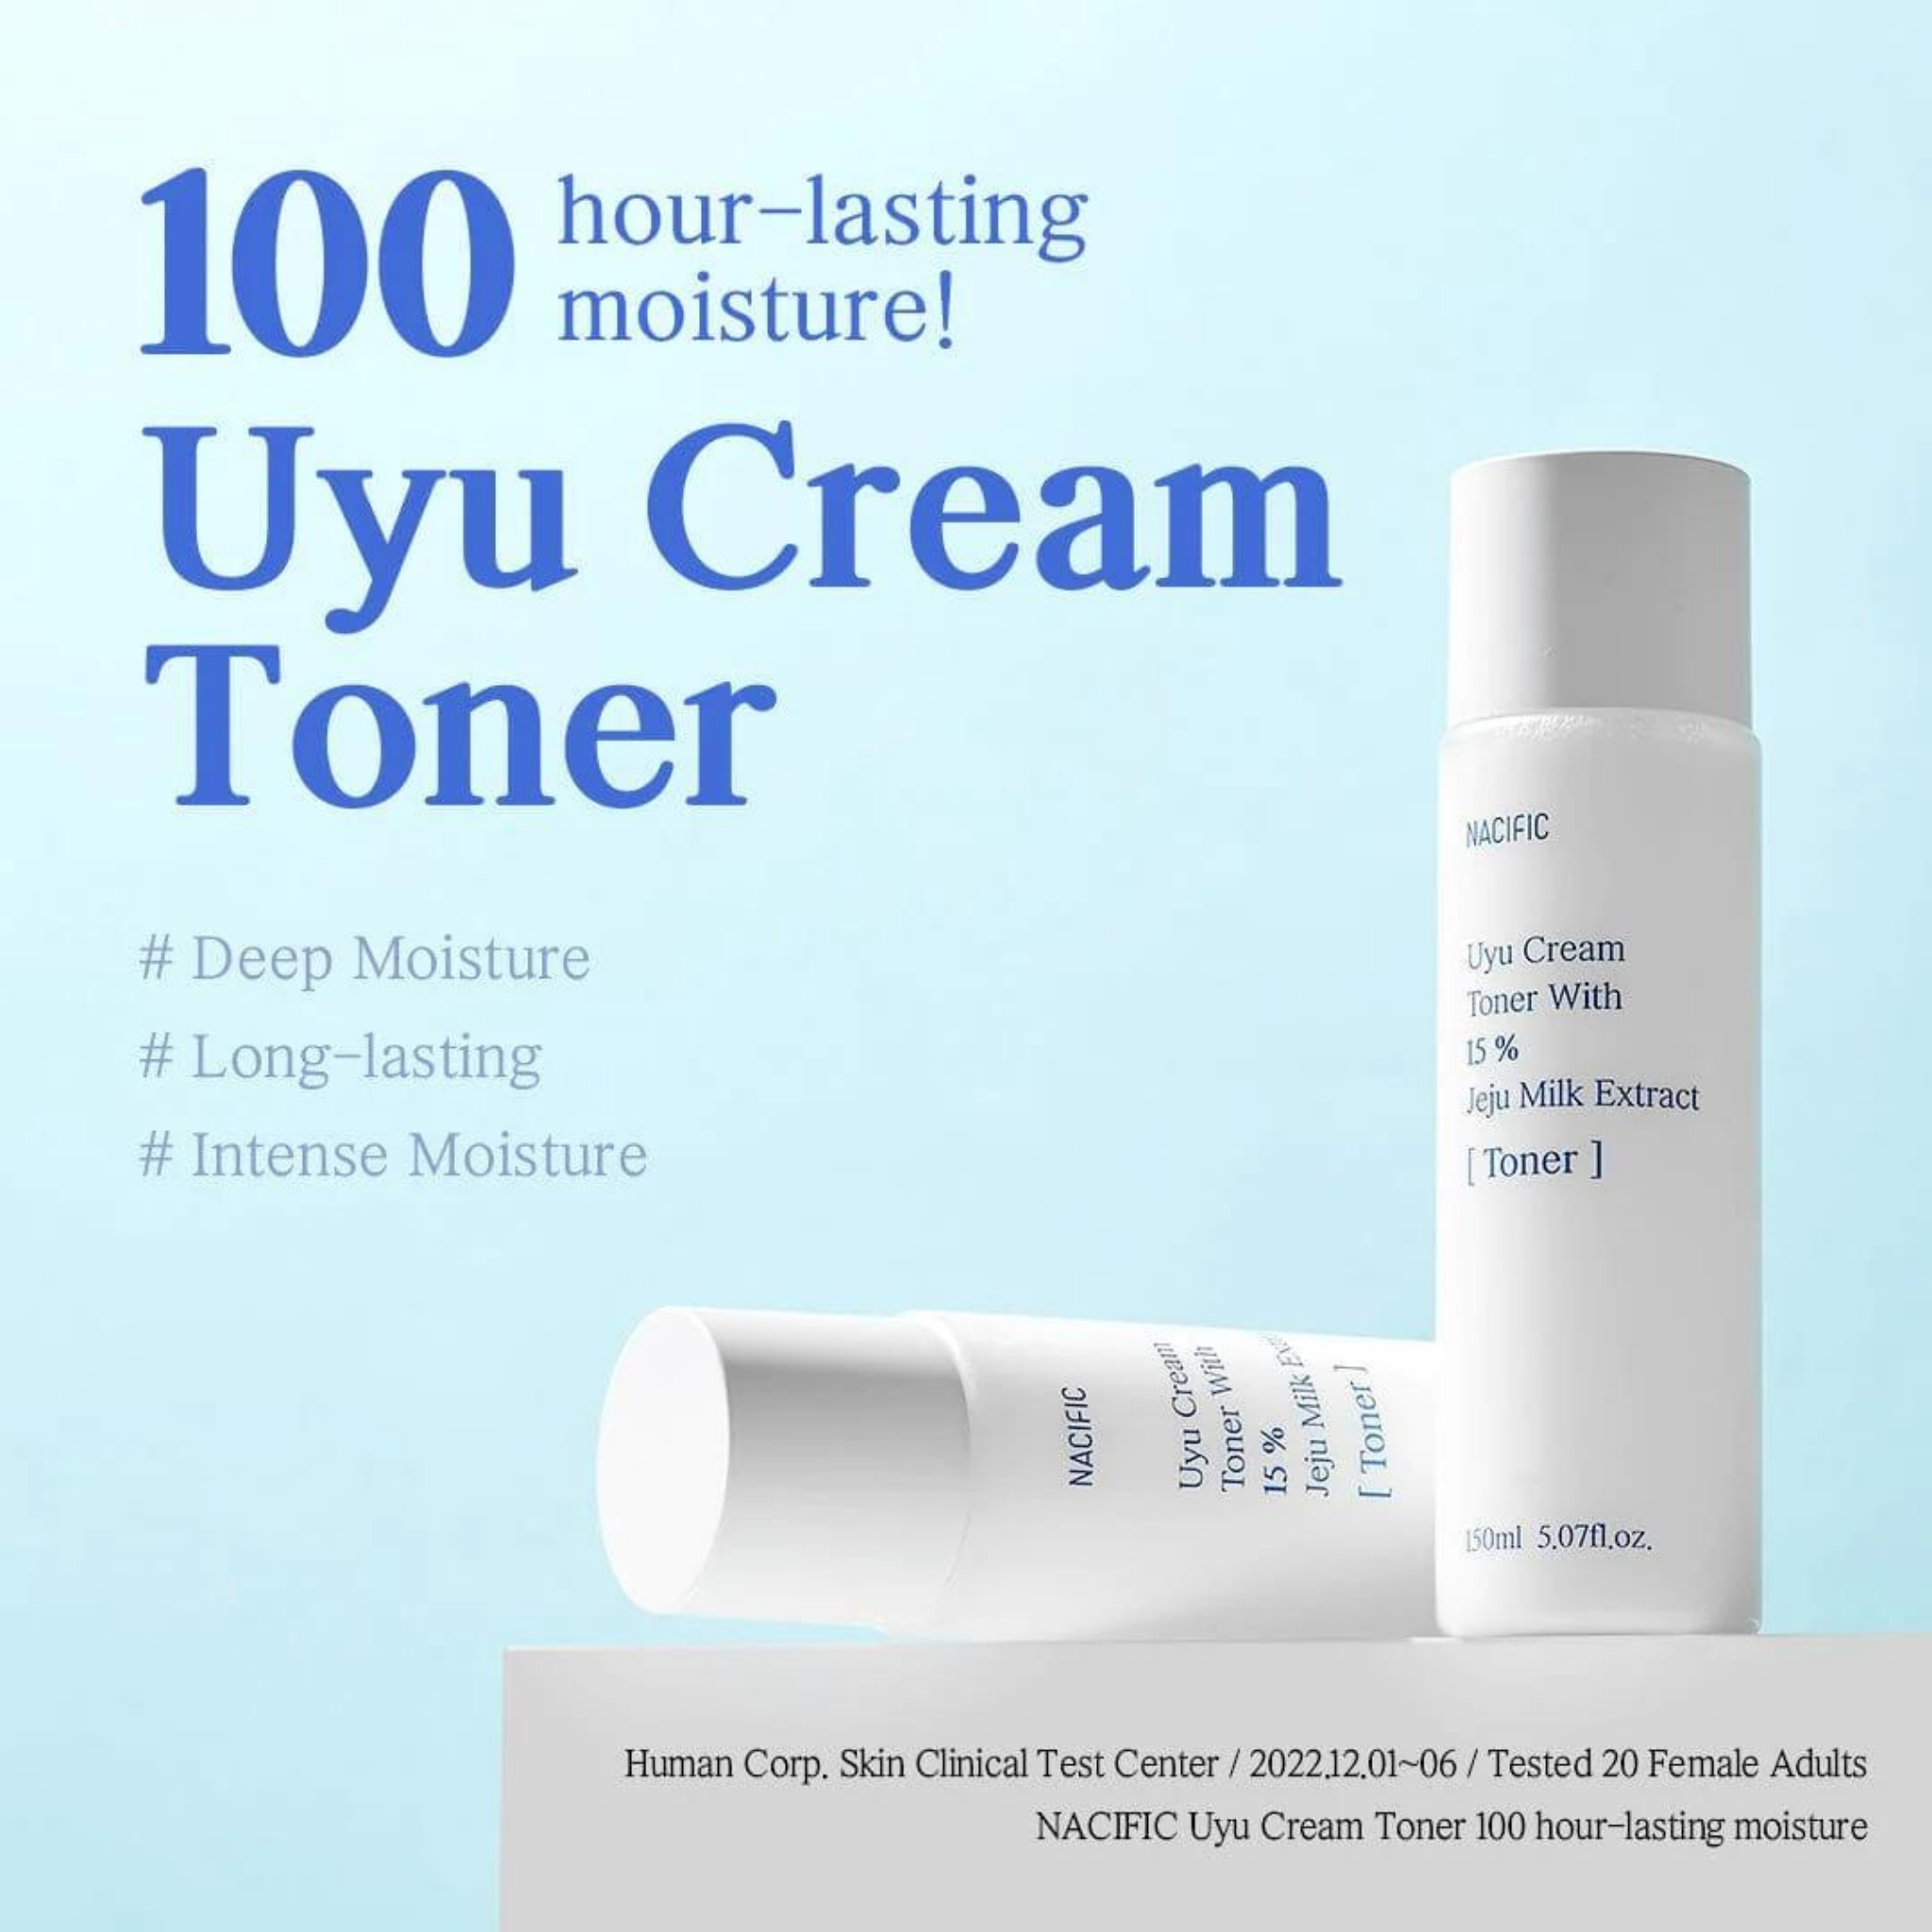 NACIFIC Uyu Cream Toner (150ml) benefits